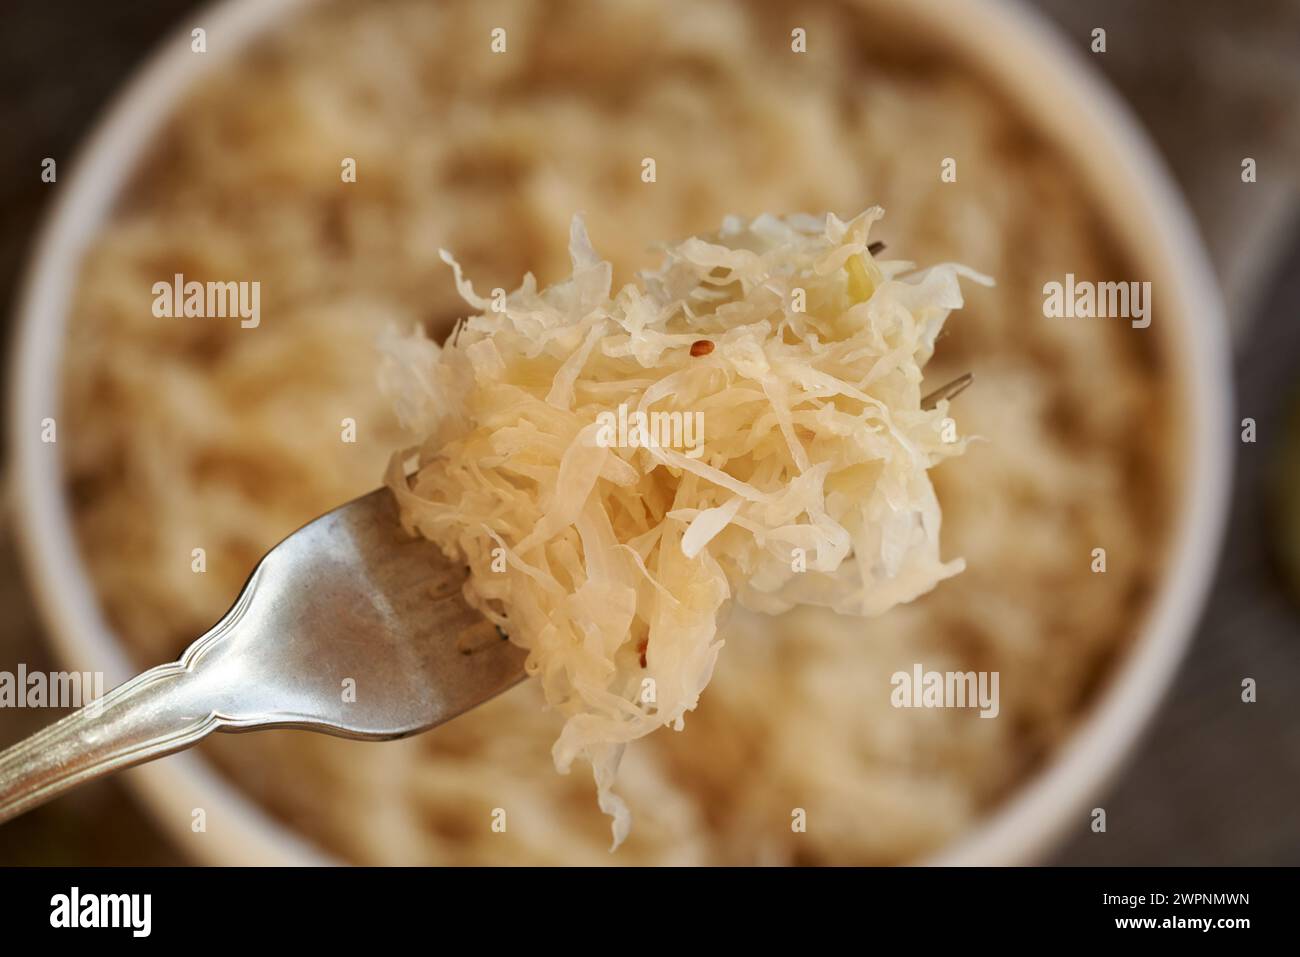 Cavolo fermentato fatto in casa o crauti su una forchetta, vista dall'alto Foto Stock